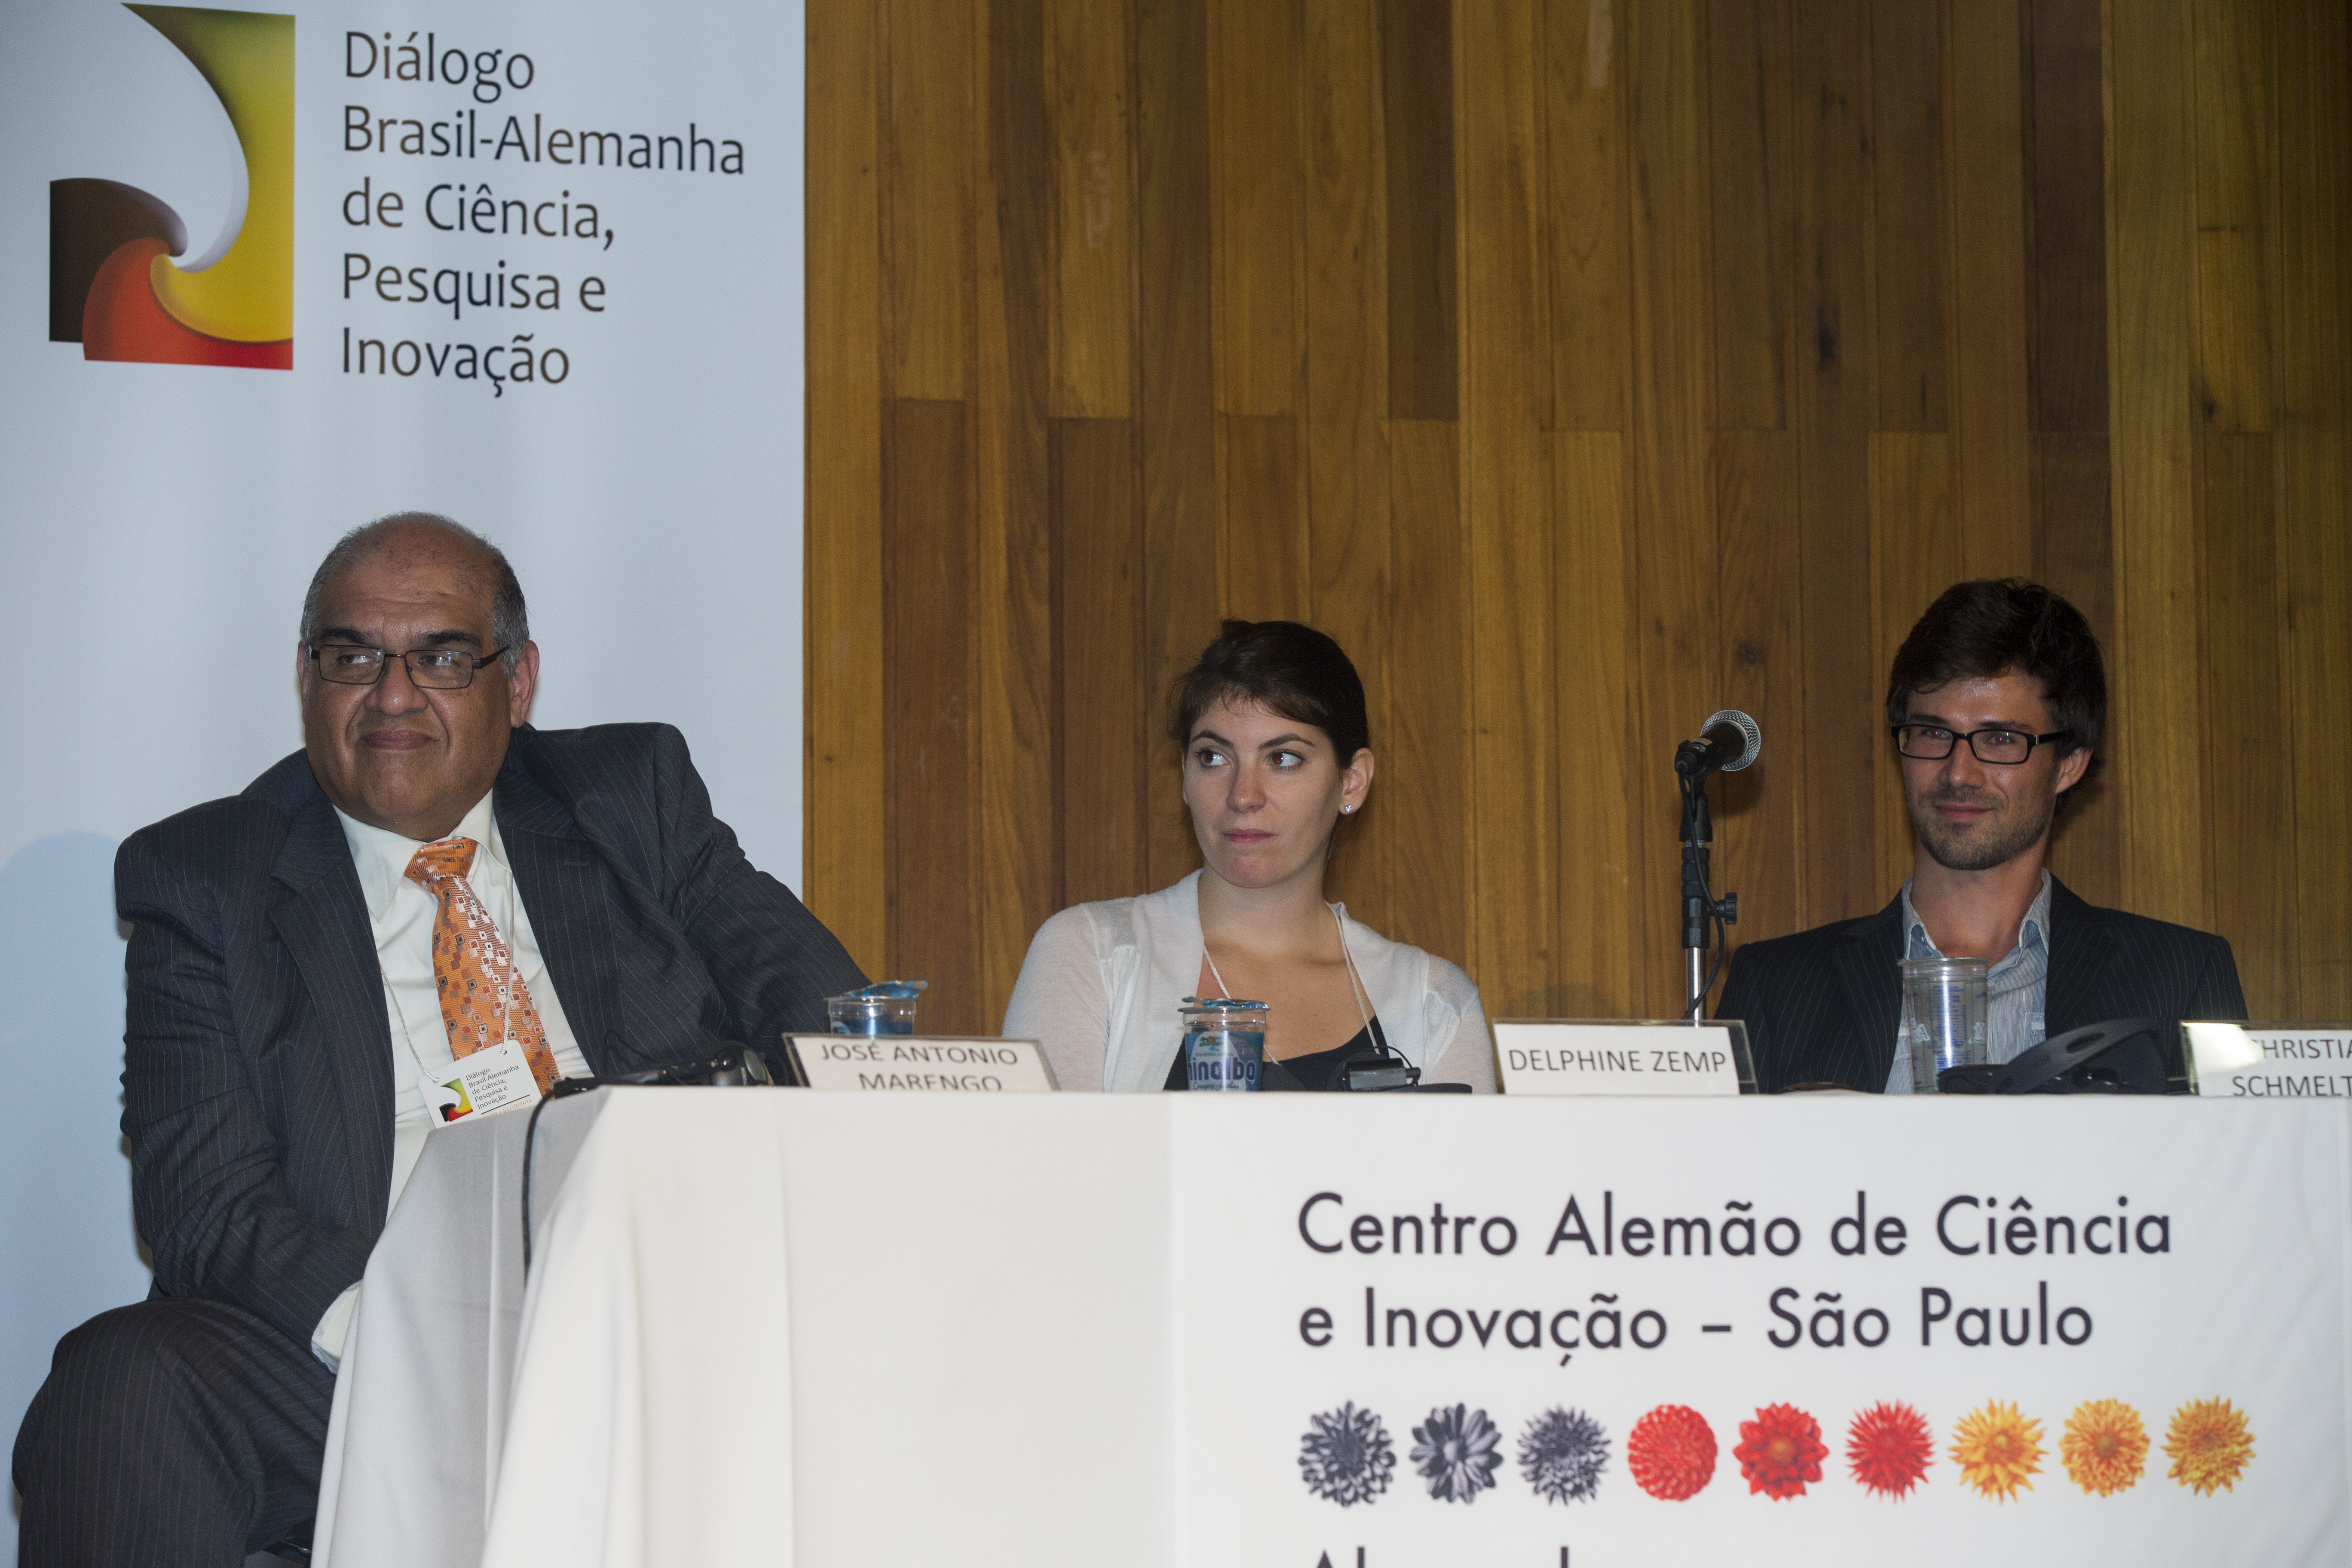 Professor Dr. José A. Marengo (INPE) mit den Doktoranden Delphine Zemp und Christian Schmeltzer als Vortragende auf dem 3. Deutsch-Brasilianischen Dialog über Wissenschaft, Forschung und Innovation in São Paulo im Jahr 2014.